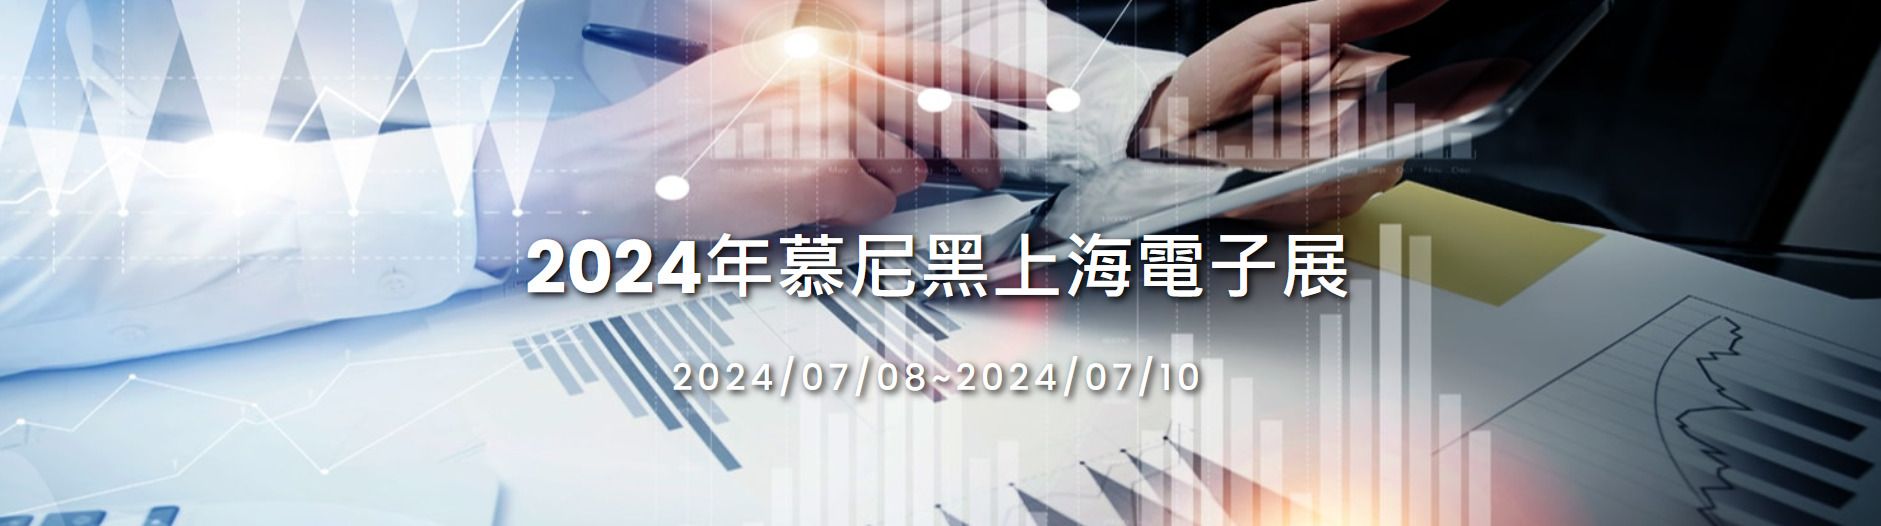 JCON Посетите выставку Electronica China в 2024 году